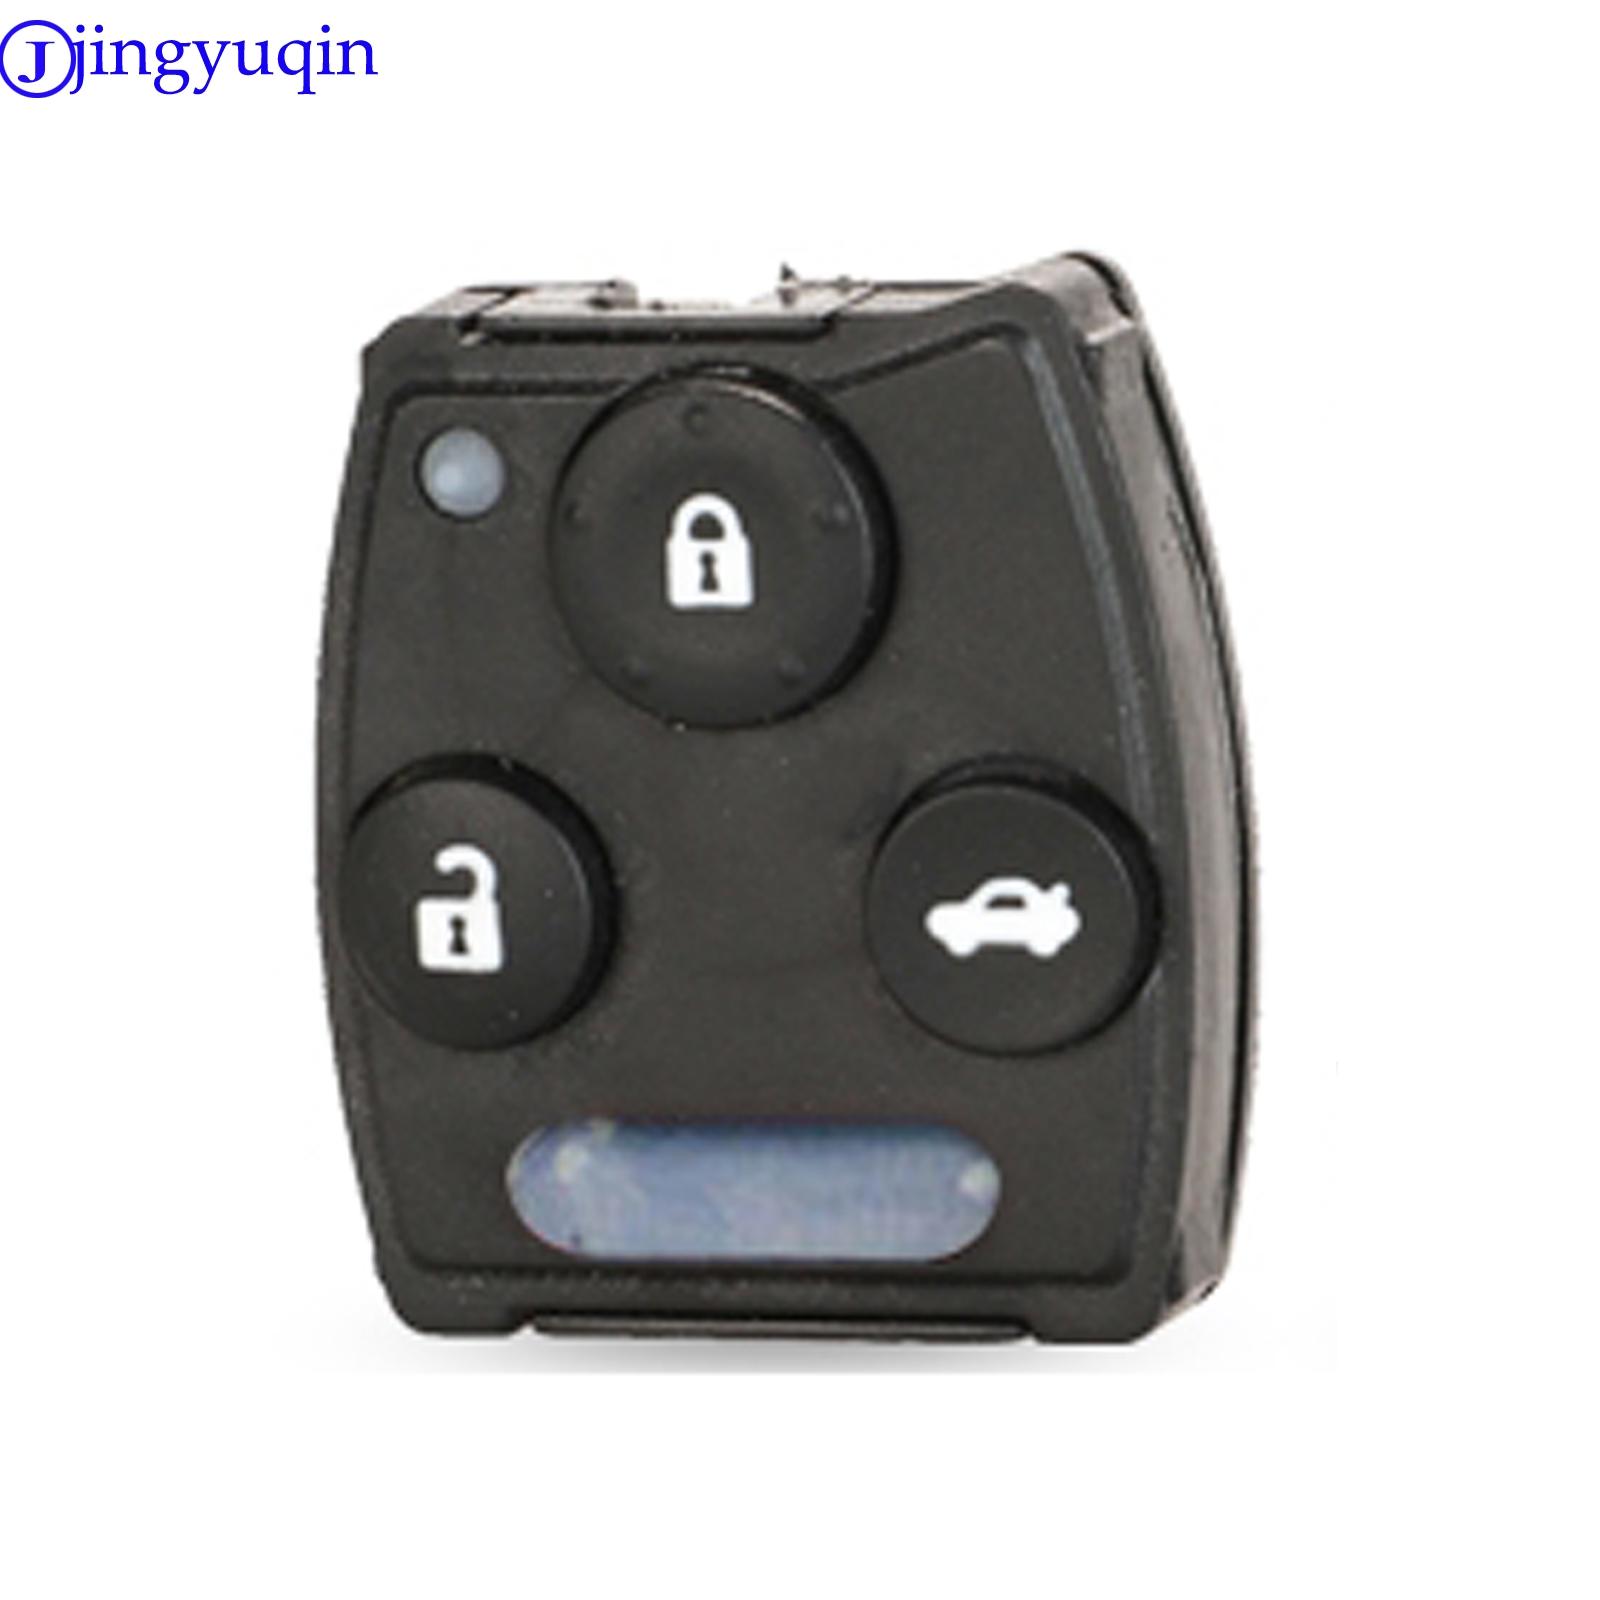 Изображение товара: Jingyuqin 2/34 бутоны с кнопками pad БЕСКЛЮЧЕВОЙ вход дистанционный ключ-брелок от машины для Honda Accord 2003 2004 2005 2006 2007